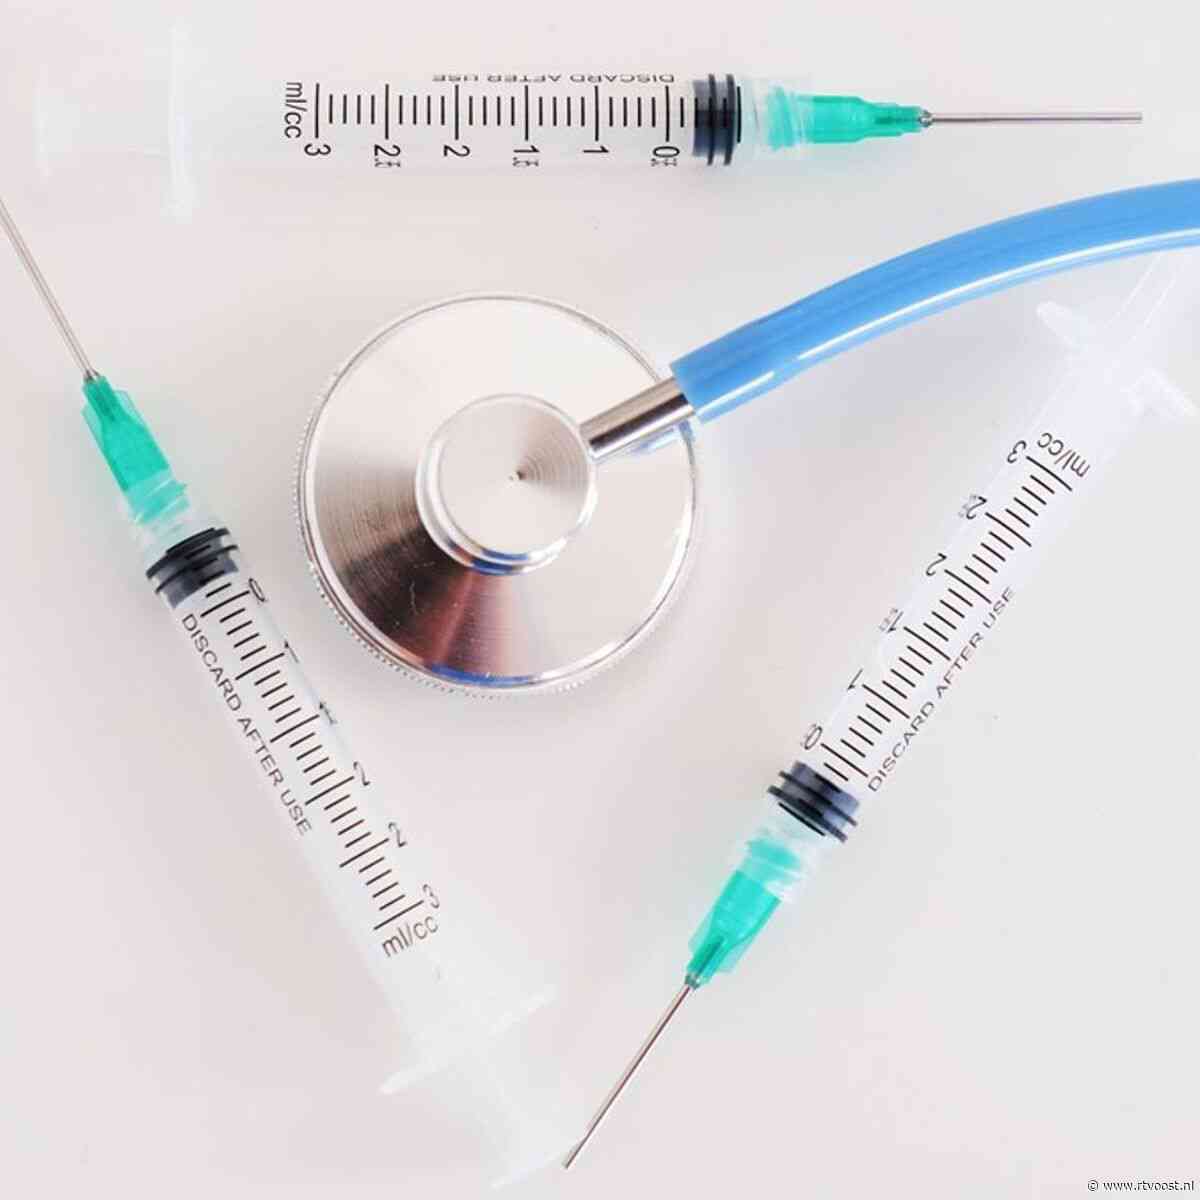 GGD IJsselland krijgt meer vragen van zwangere vrouwen over vaccinatie tegen kinkhoest